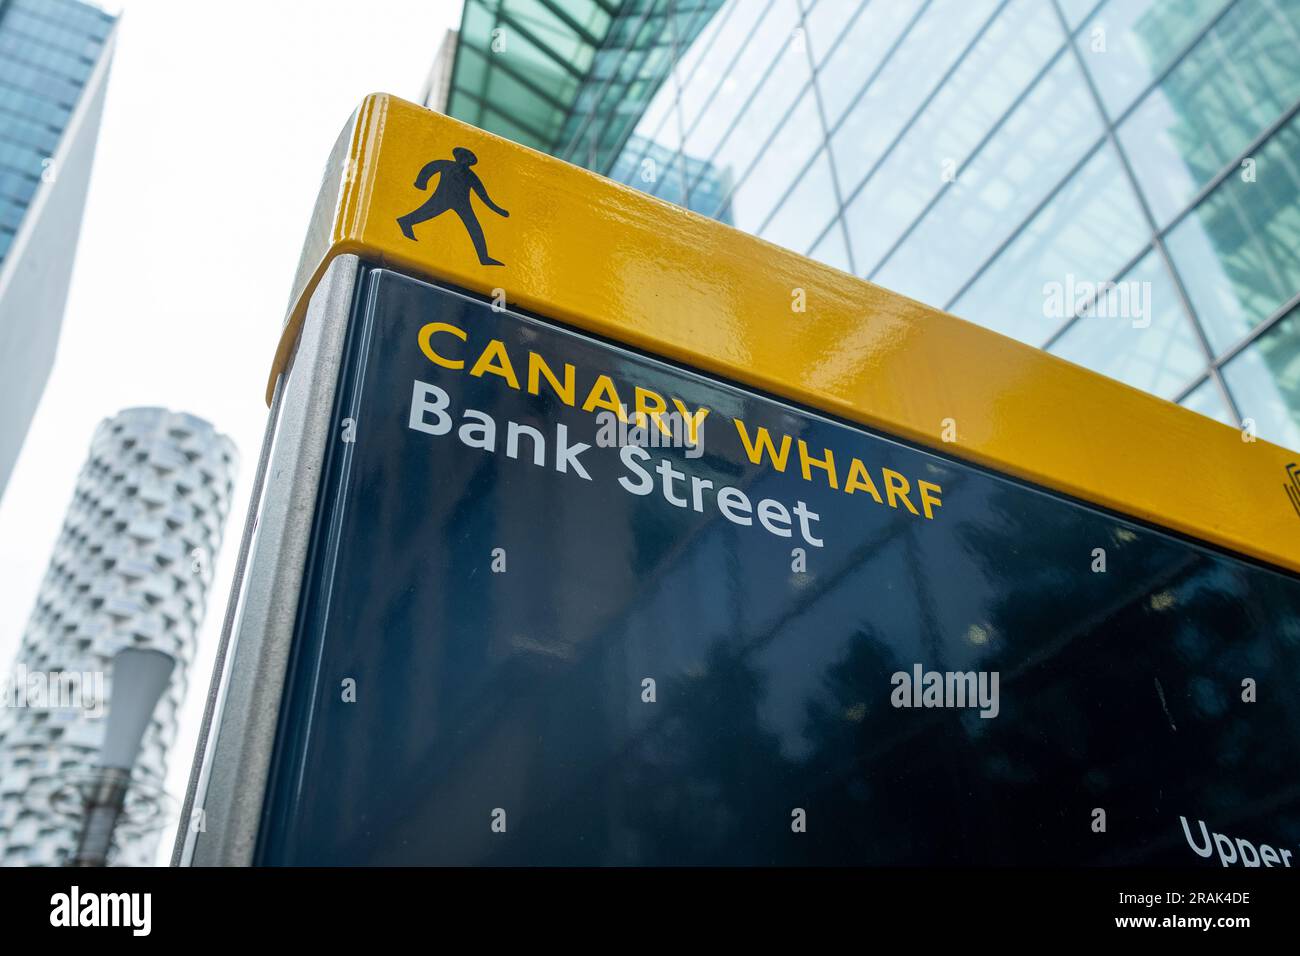 London- Canary Wharf Bank Street, segnaletica tra gli alti edifici di uffici finanziari di Canary Wharf, il principale centro finanziario internazionale Foto Stock